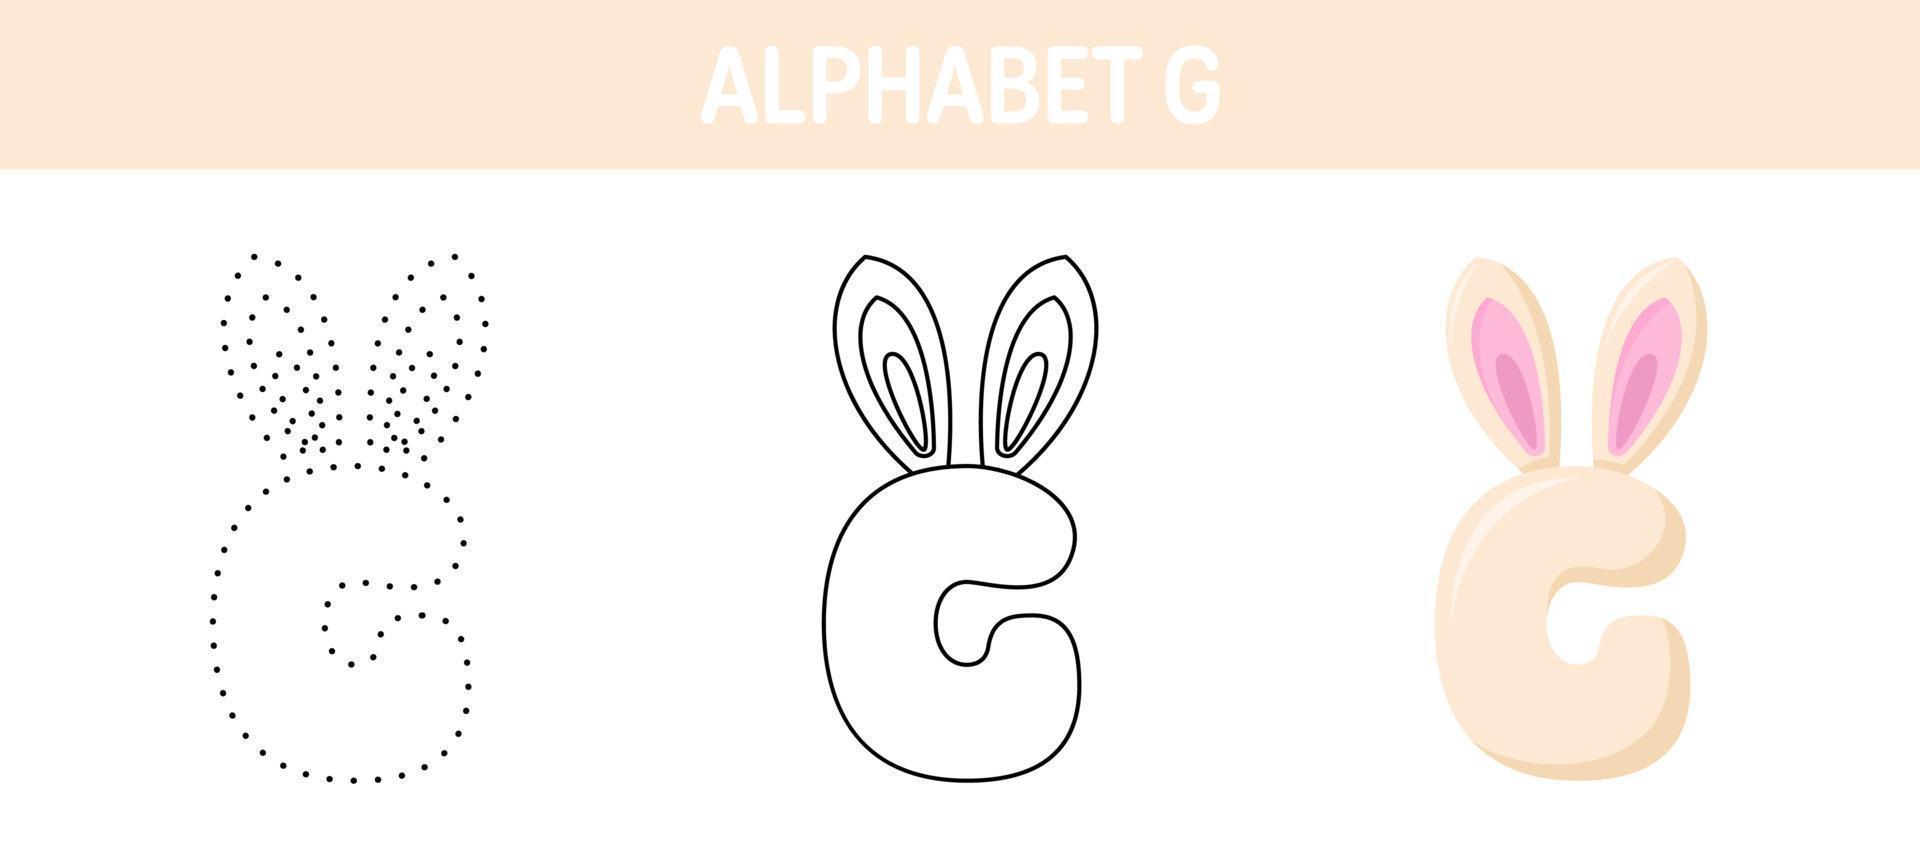 Arbeitsblatt zum nachzeichnen und ausmalen von alphabet g für kinder vektor